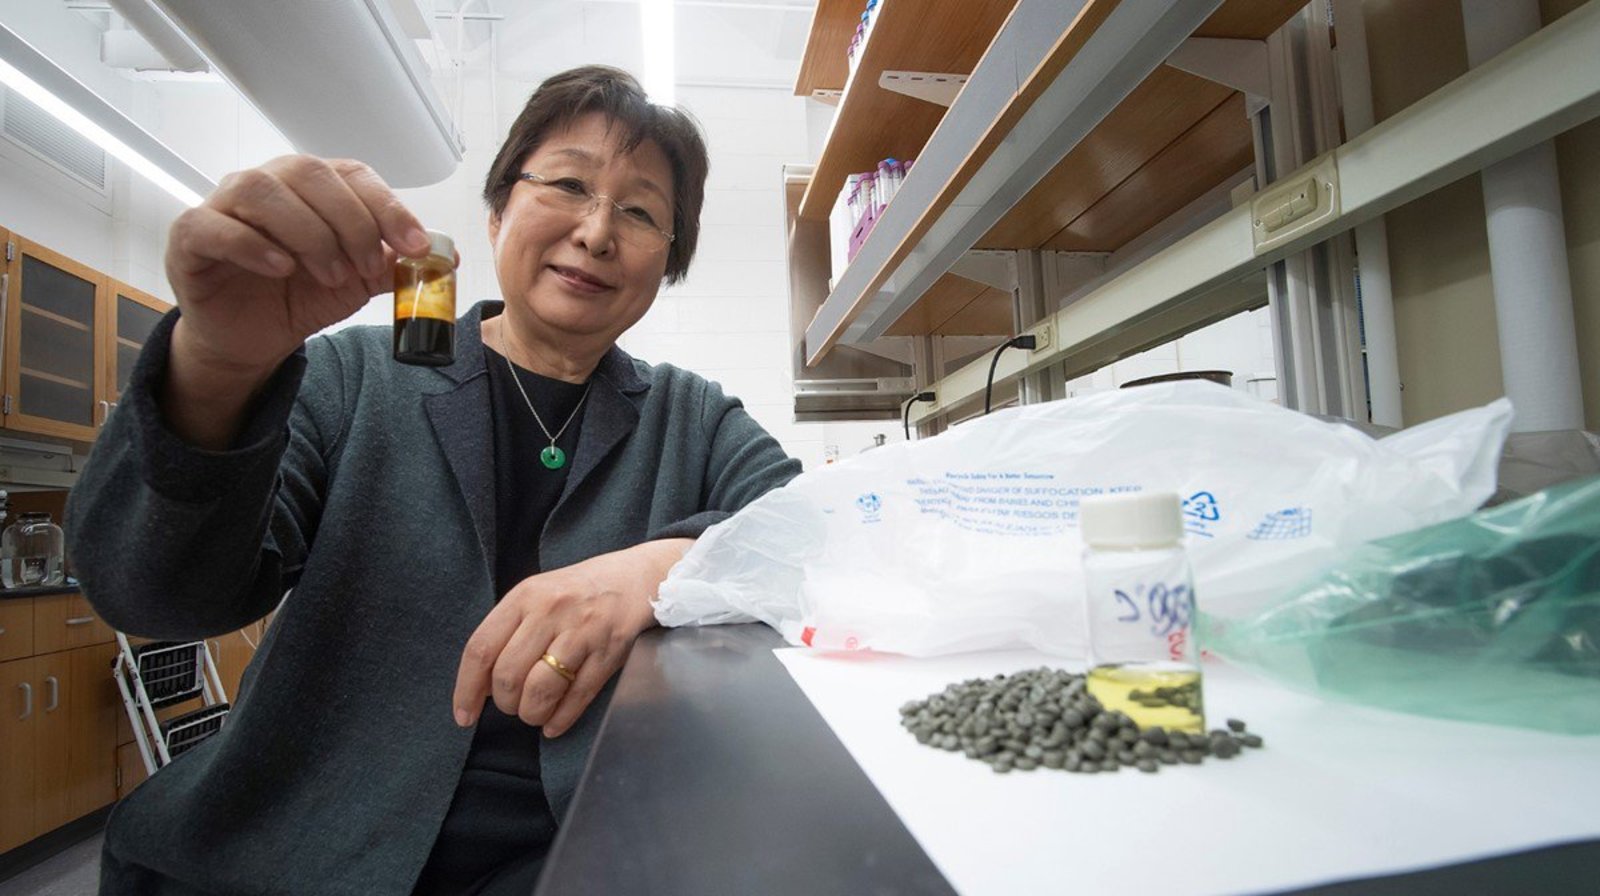 Avance. Linda Wang se inspiró para crear esta tecnología después de leer sobre la contaminación de desechos plásticos de los océanos. (TWITTER / @Research_Purdue)